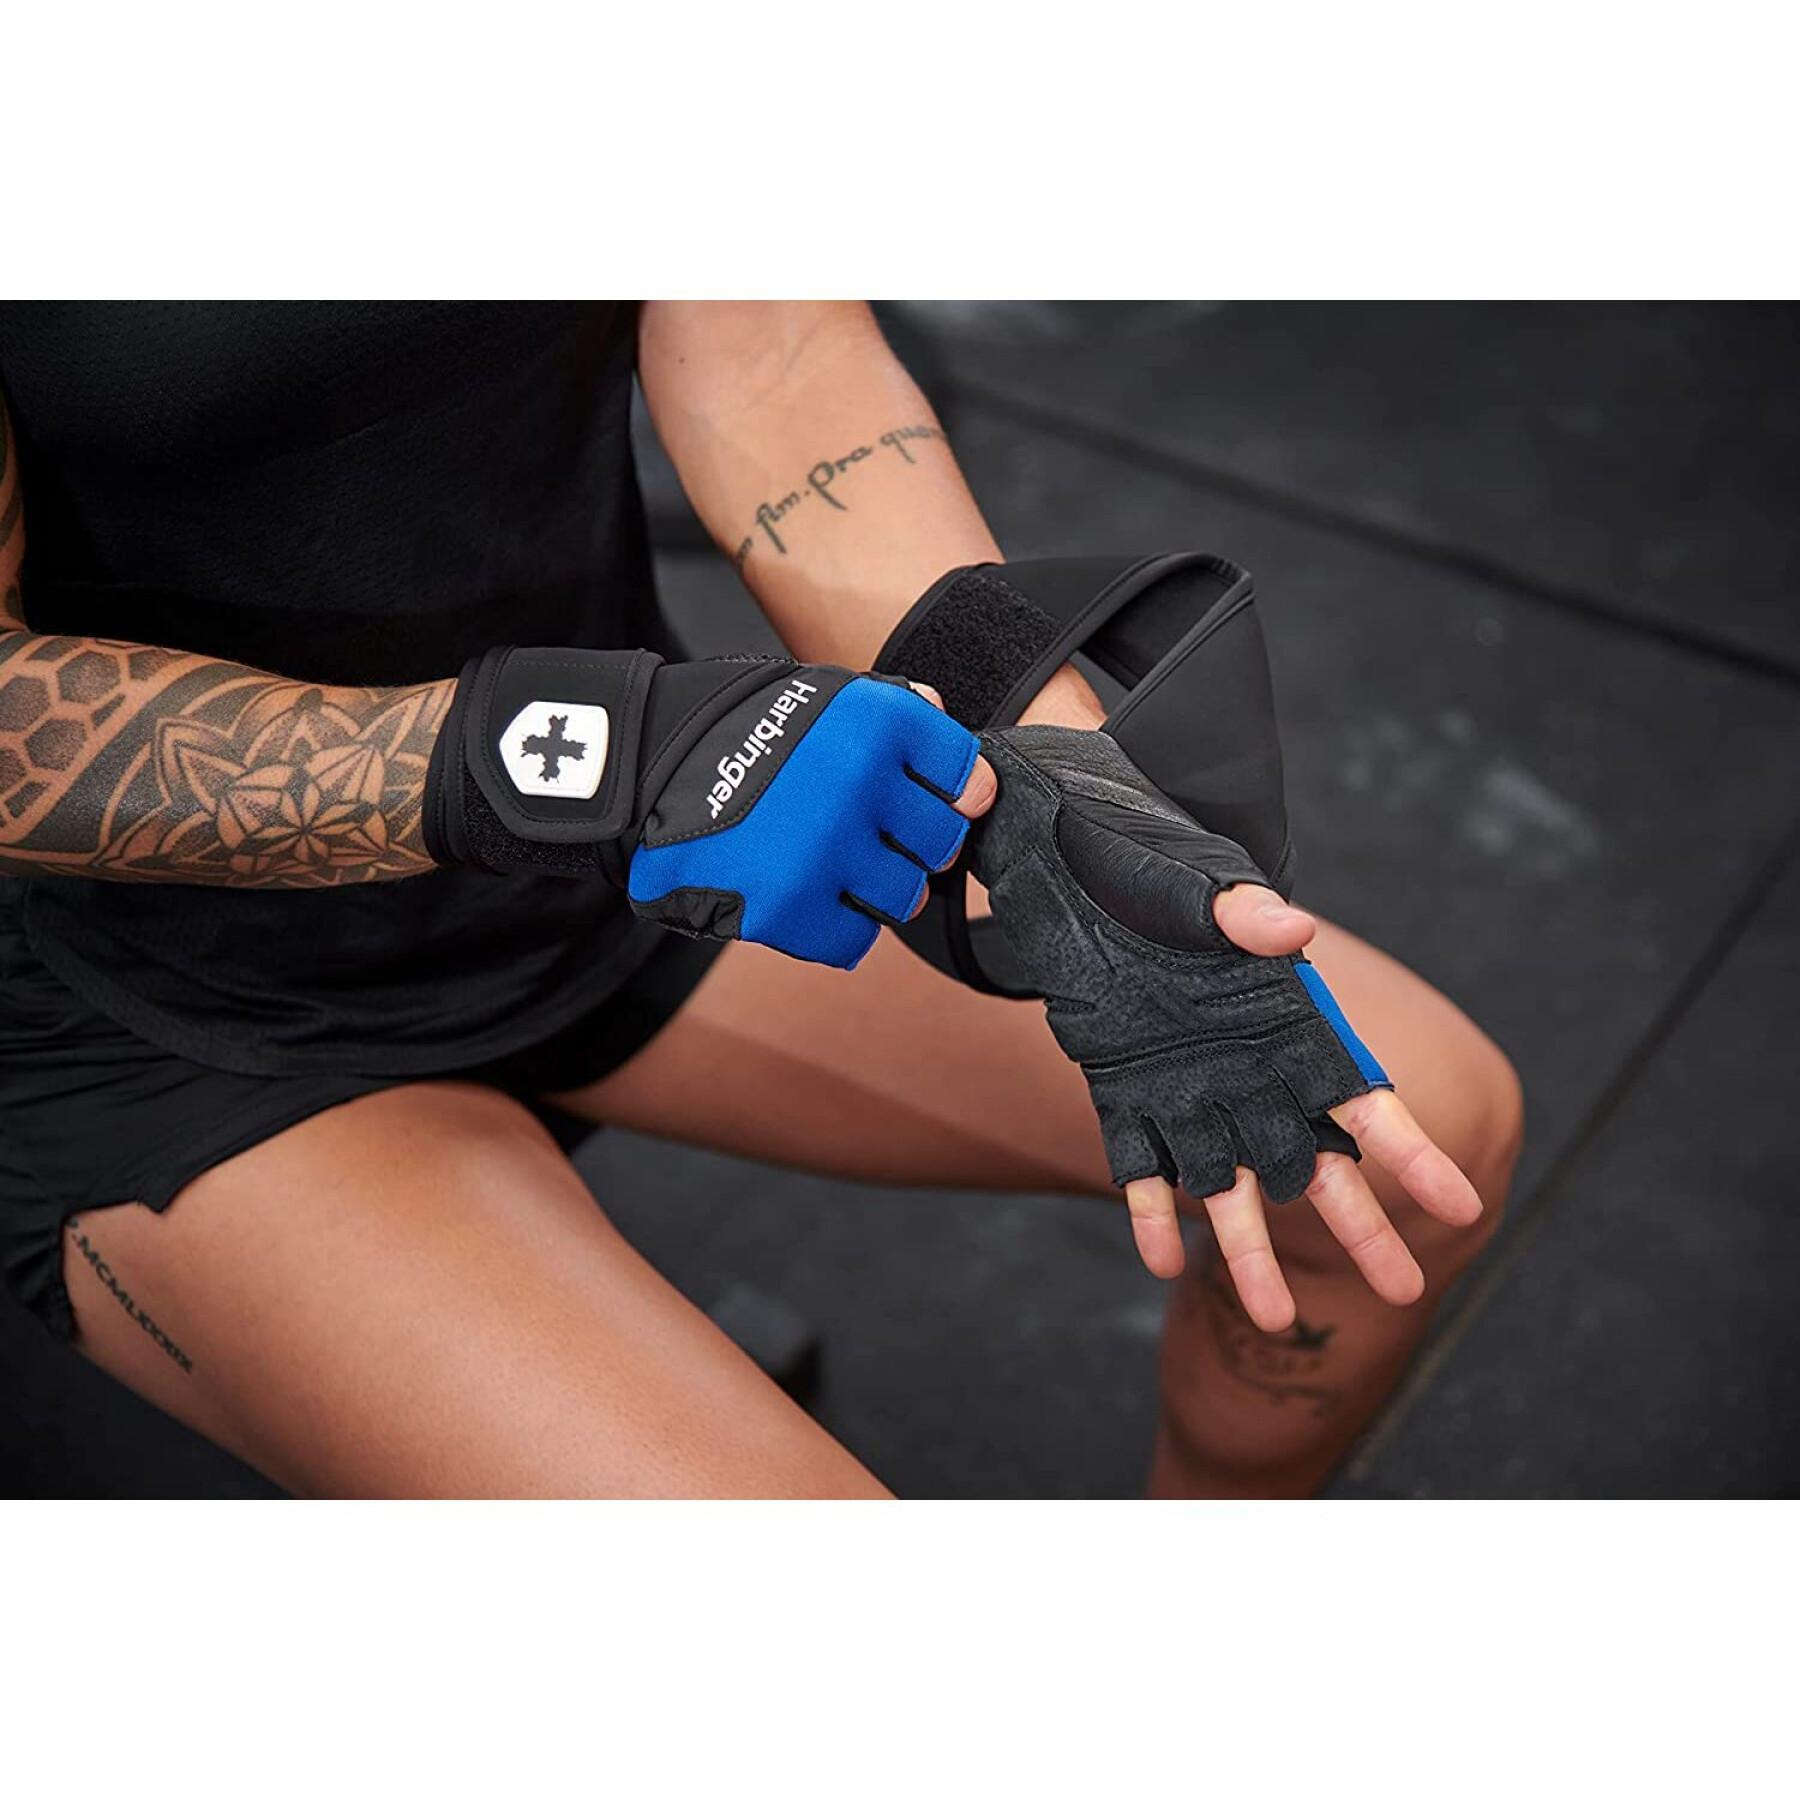 Gloves from Fitness Harbinger Training Grip WW 2.0